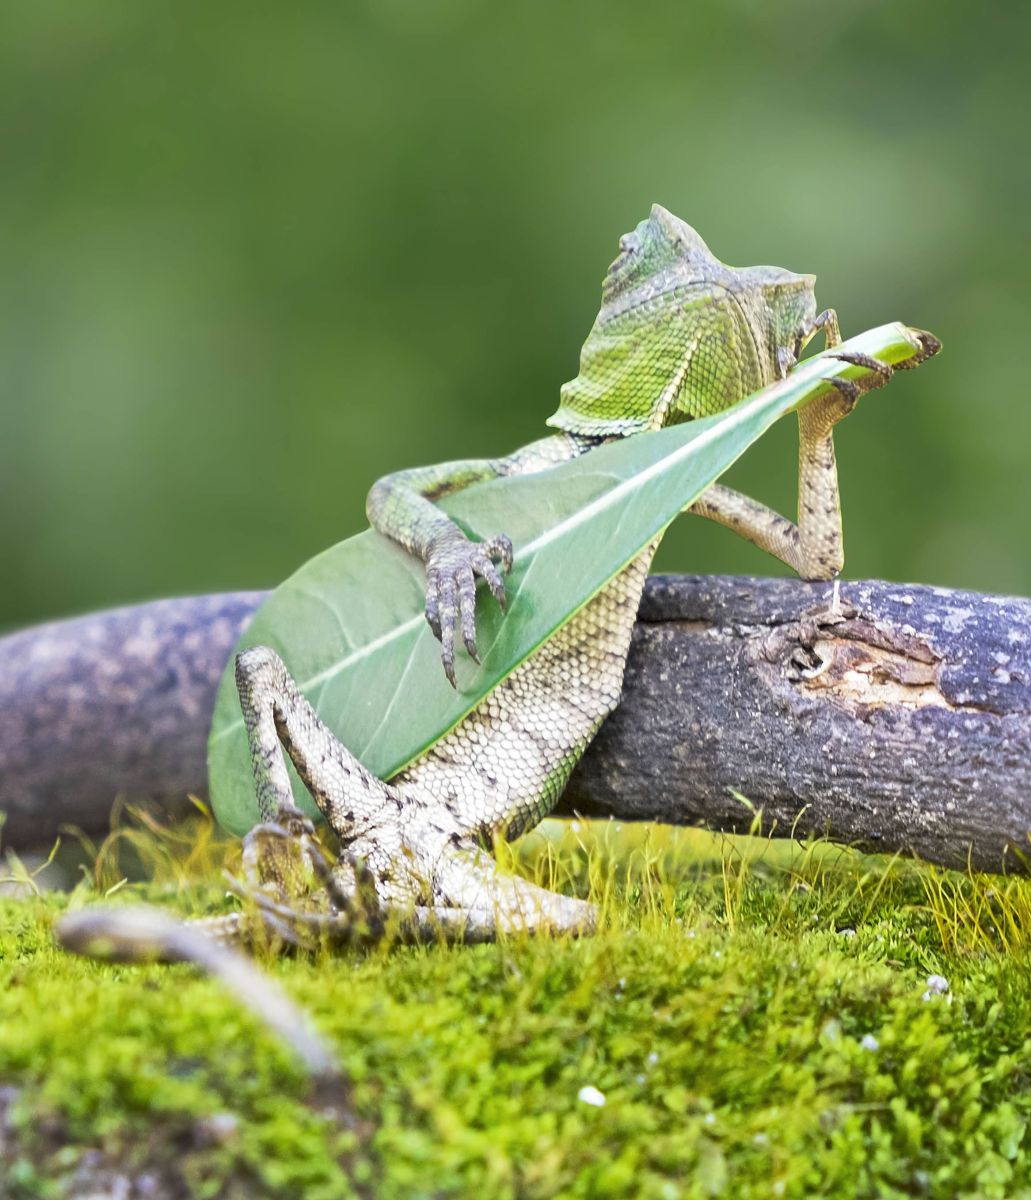 Lizard strikes human-like pose, playing guitar - Men's Journal